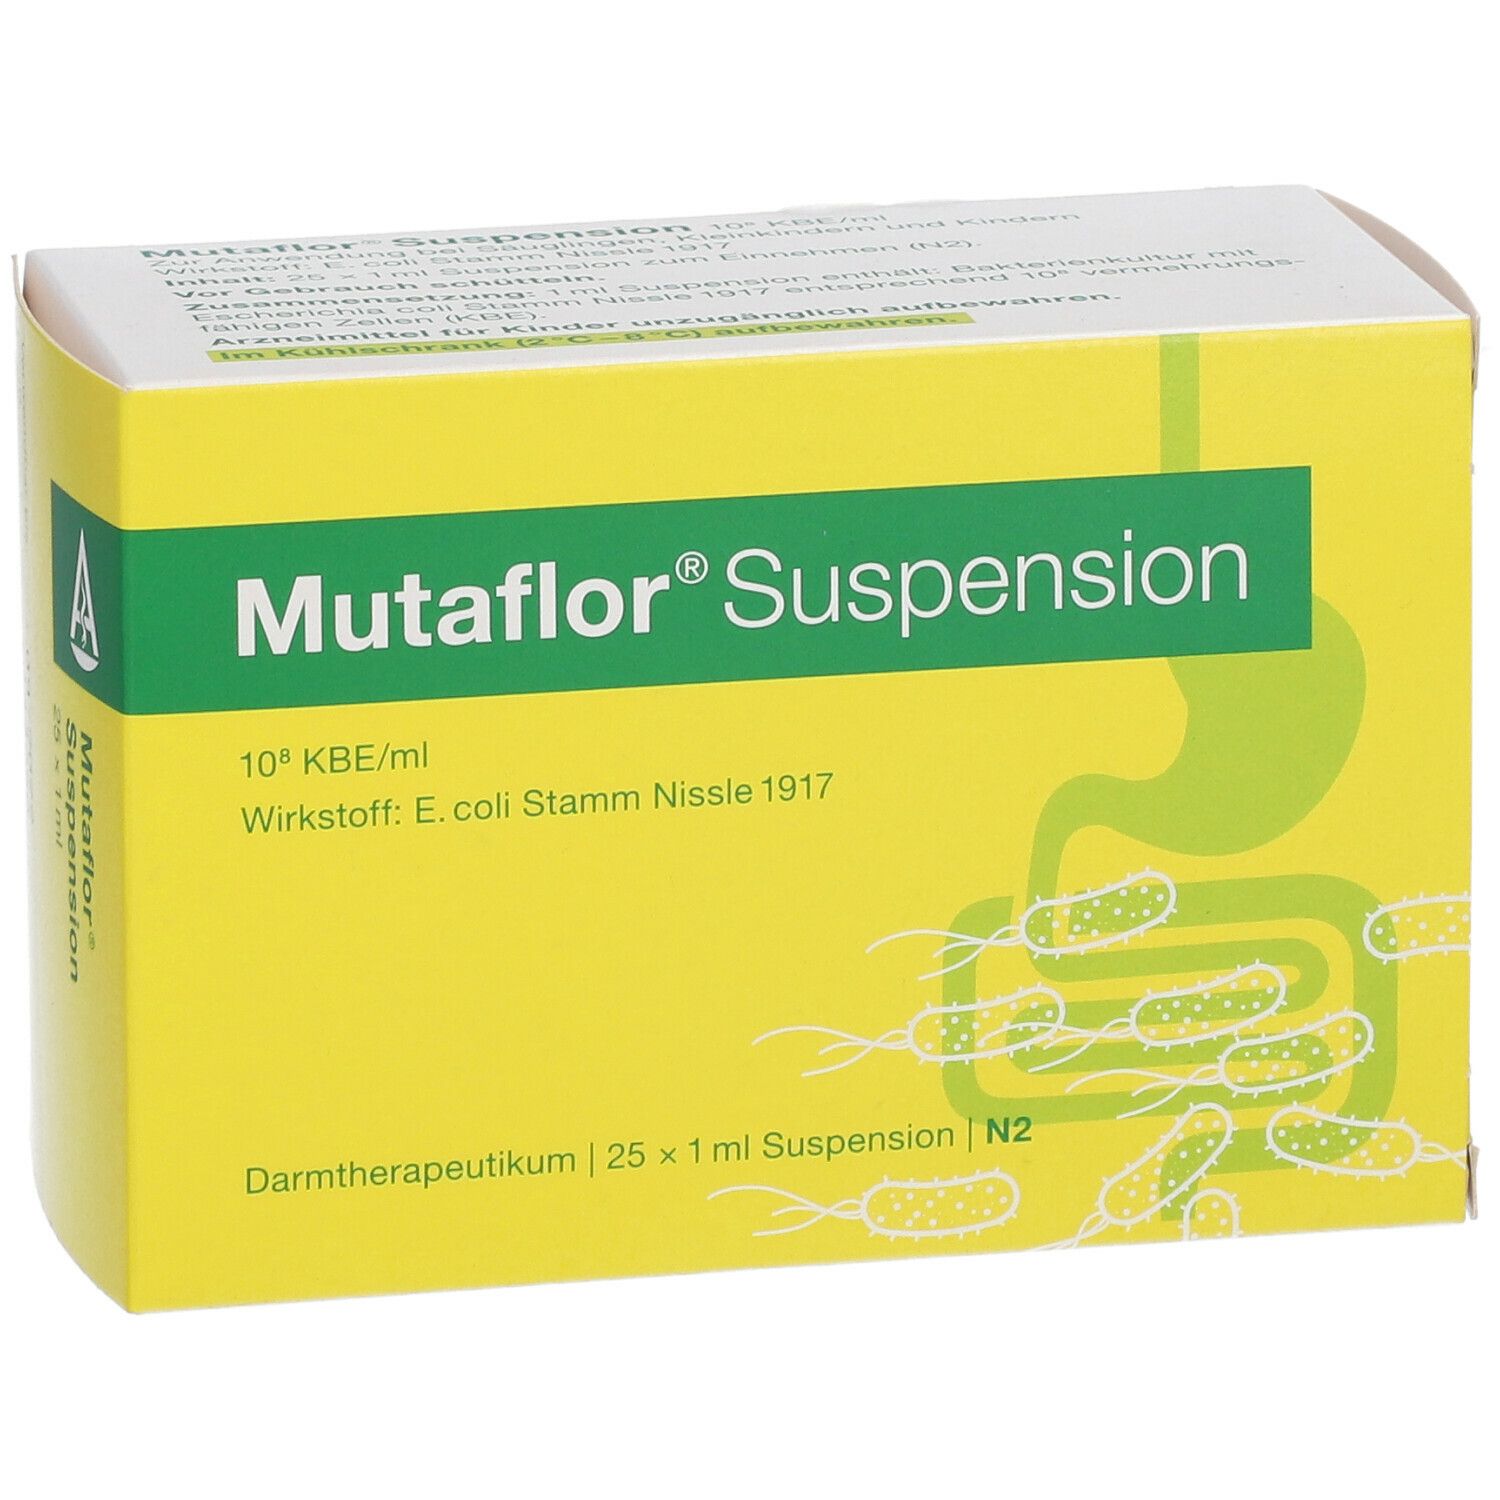 Mutaflor® Suspension